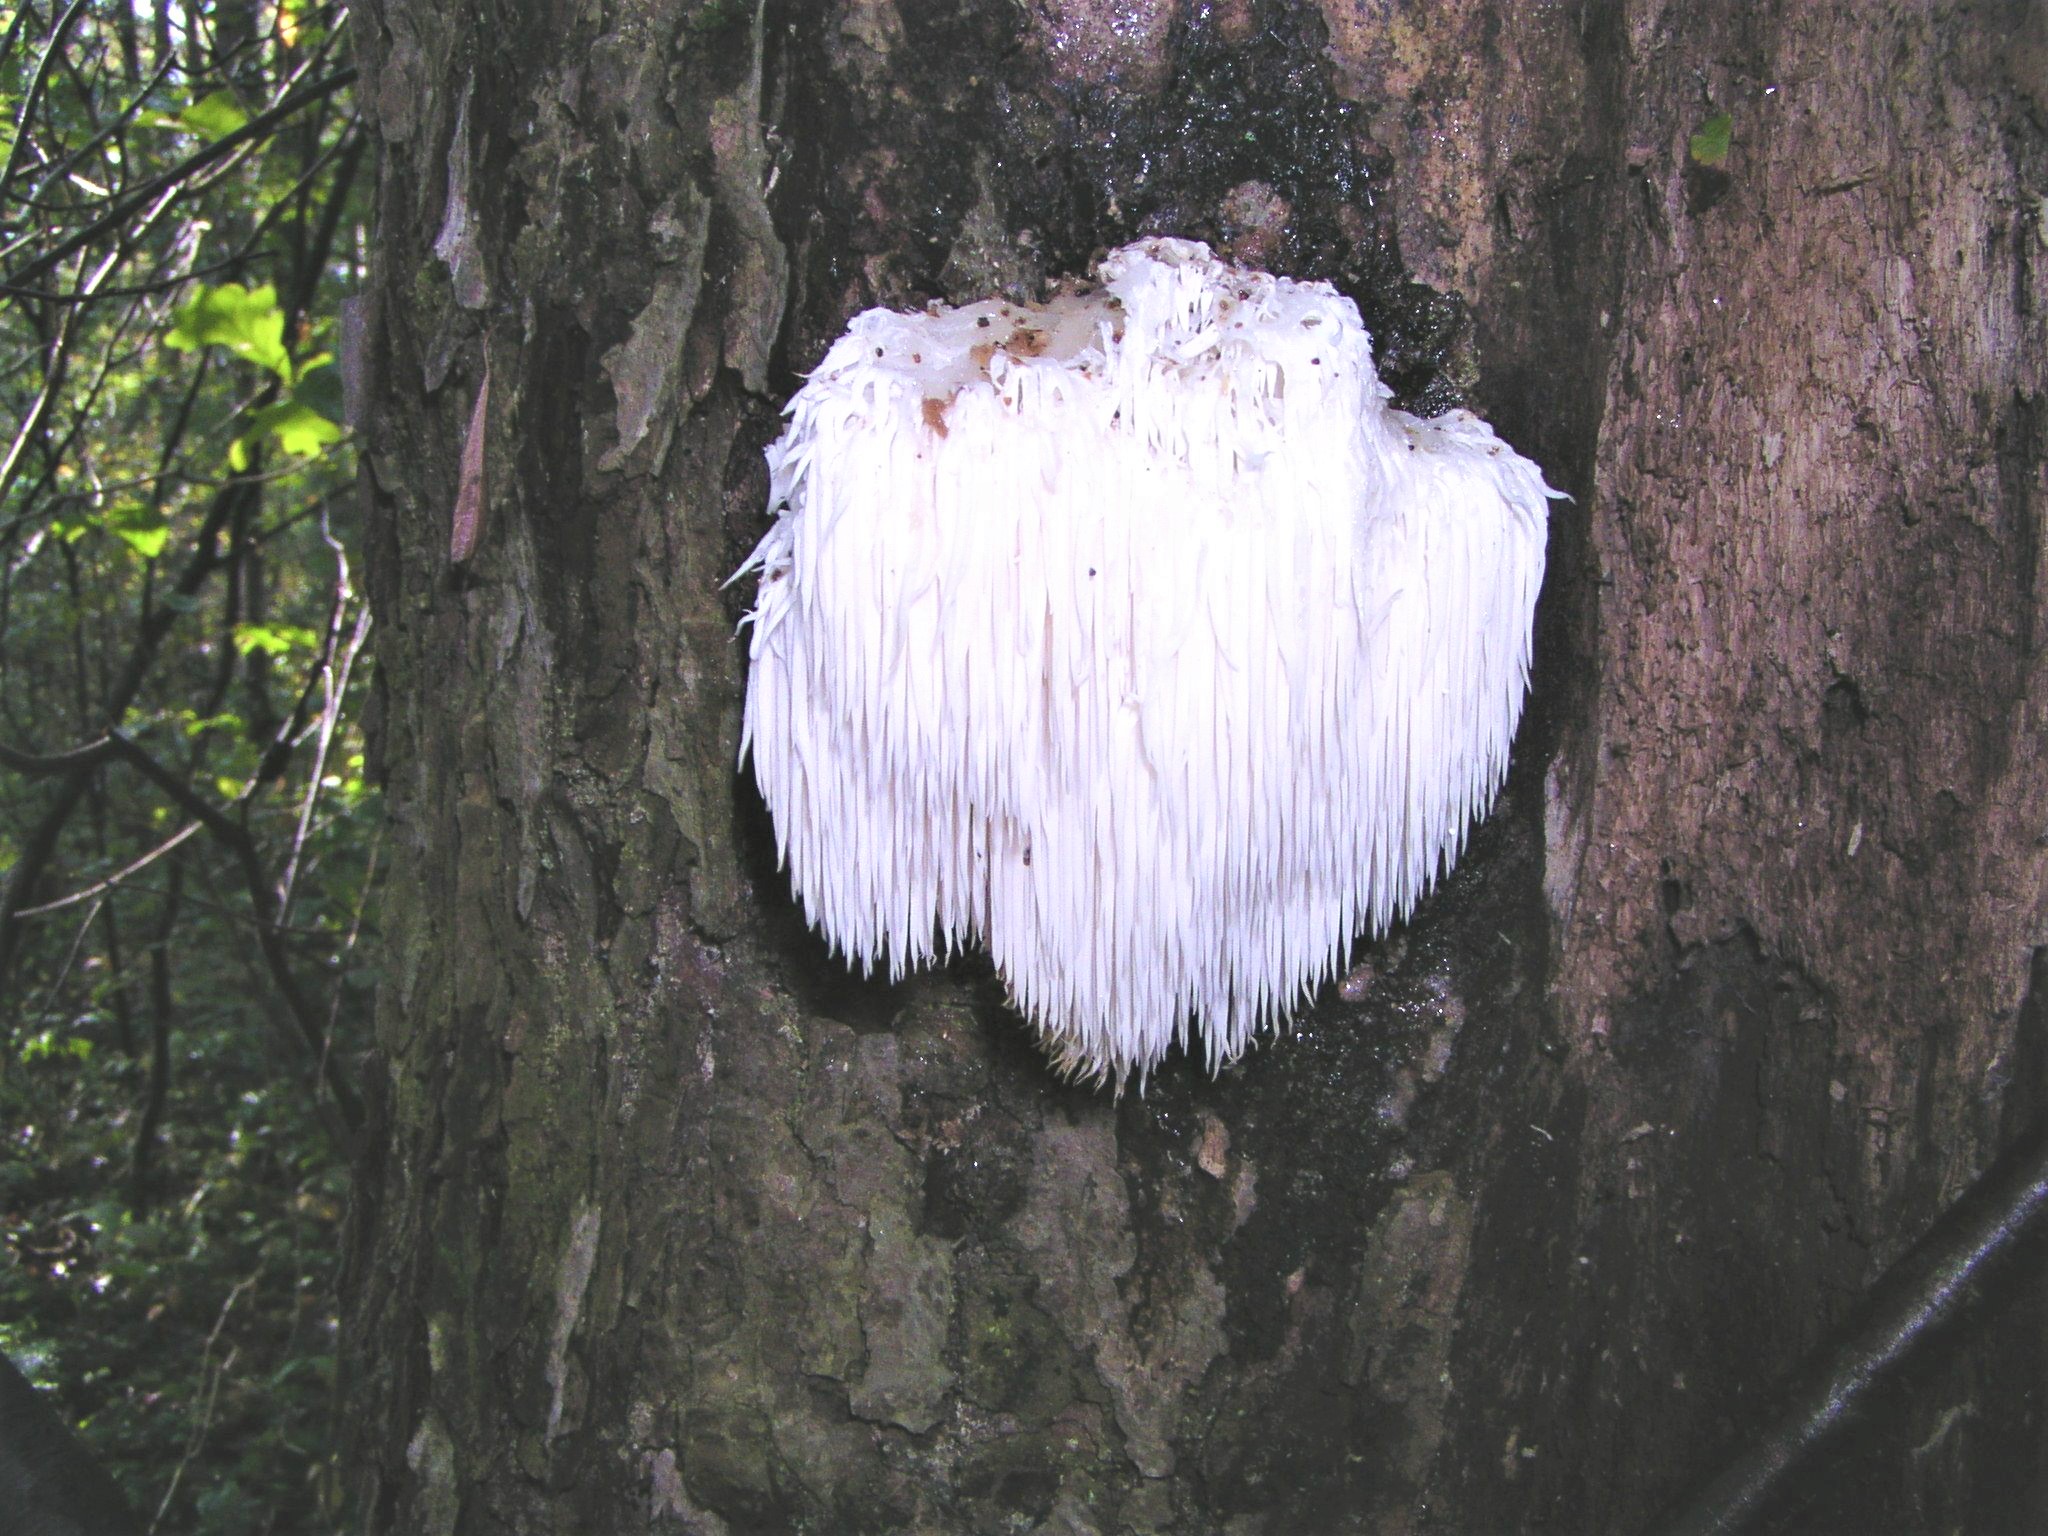 White Shag Fungi